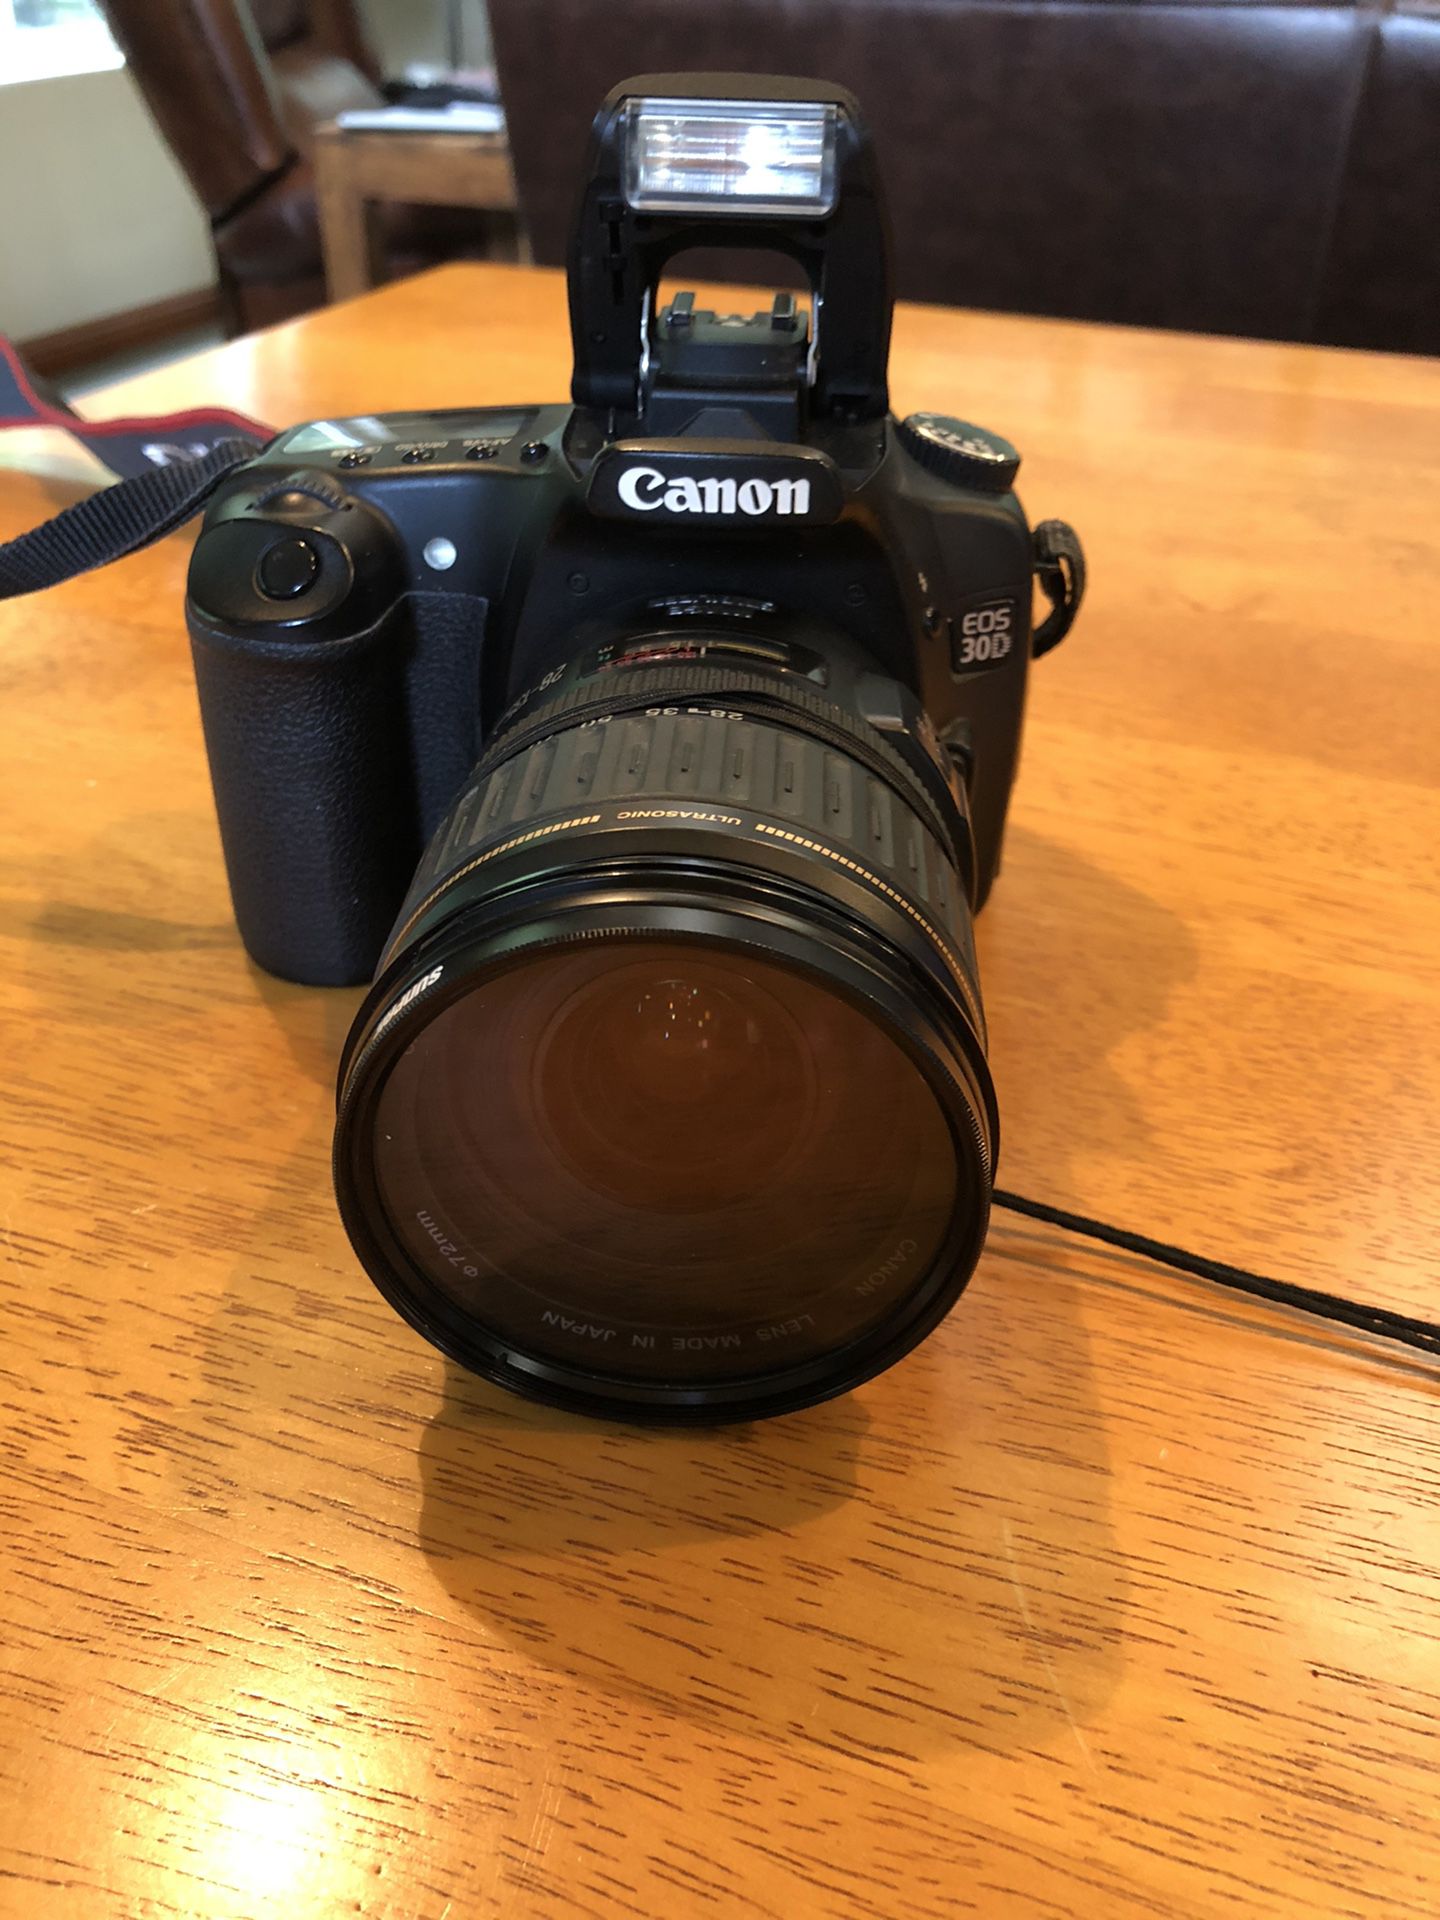 Canon EOS 30D 8.2 Digital AF SLR Camera Kit with 4 Lenses